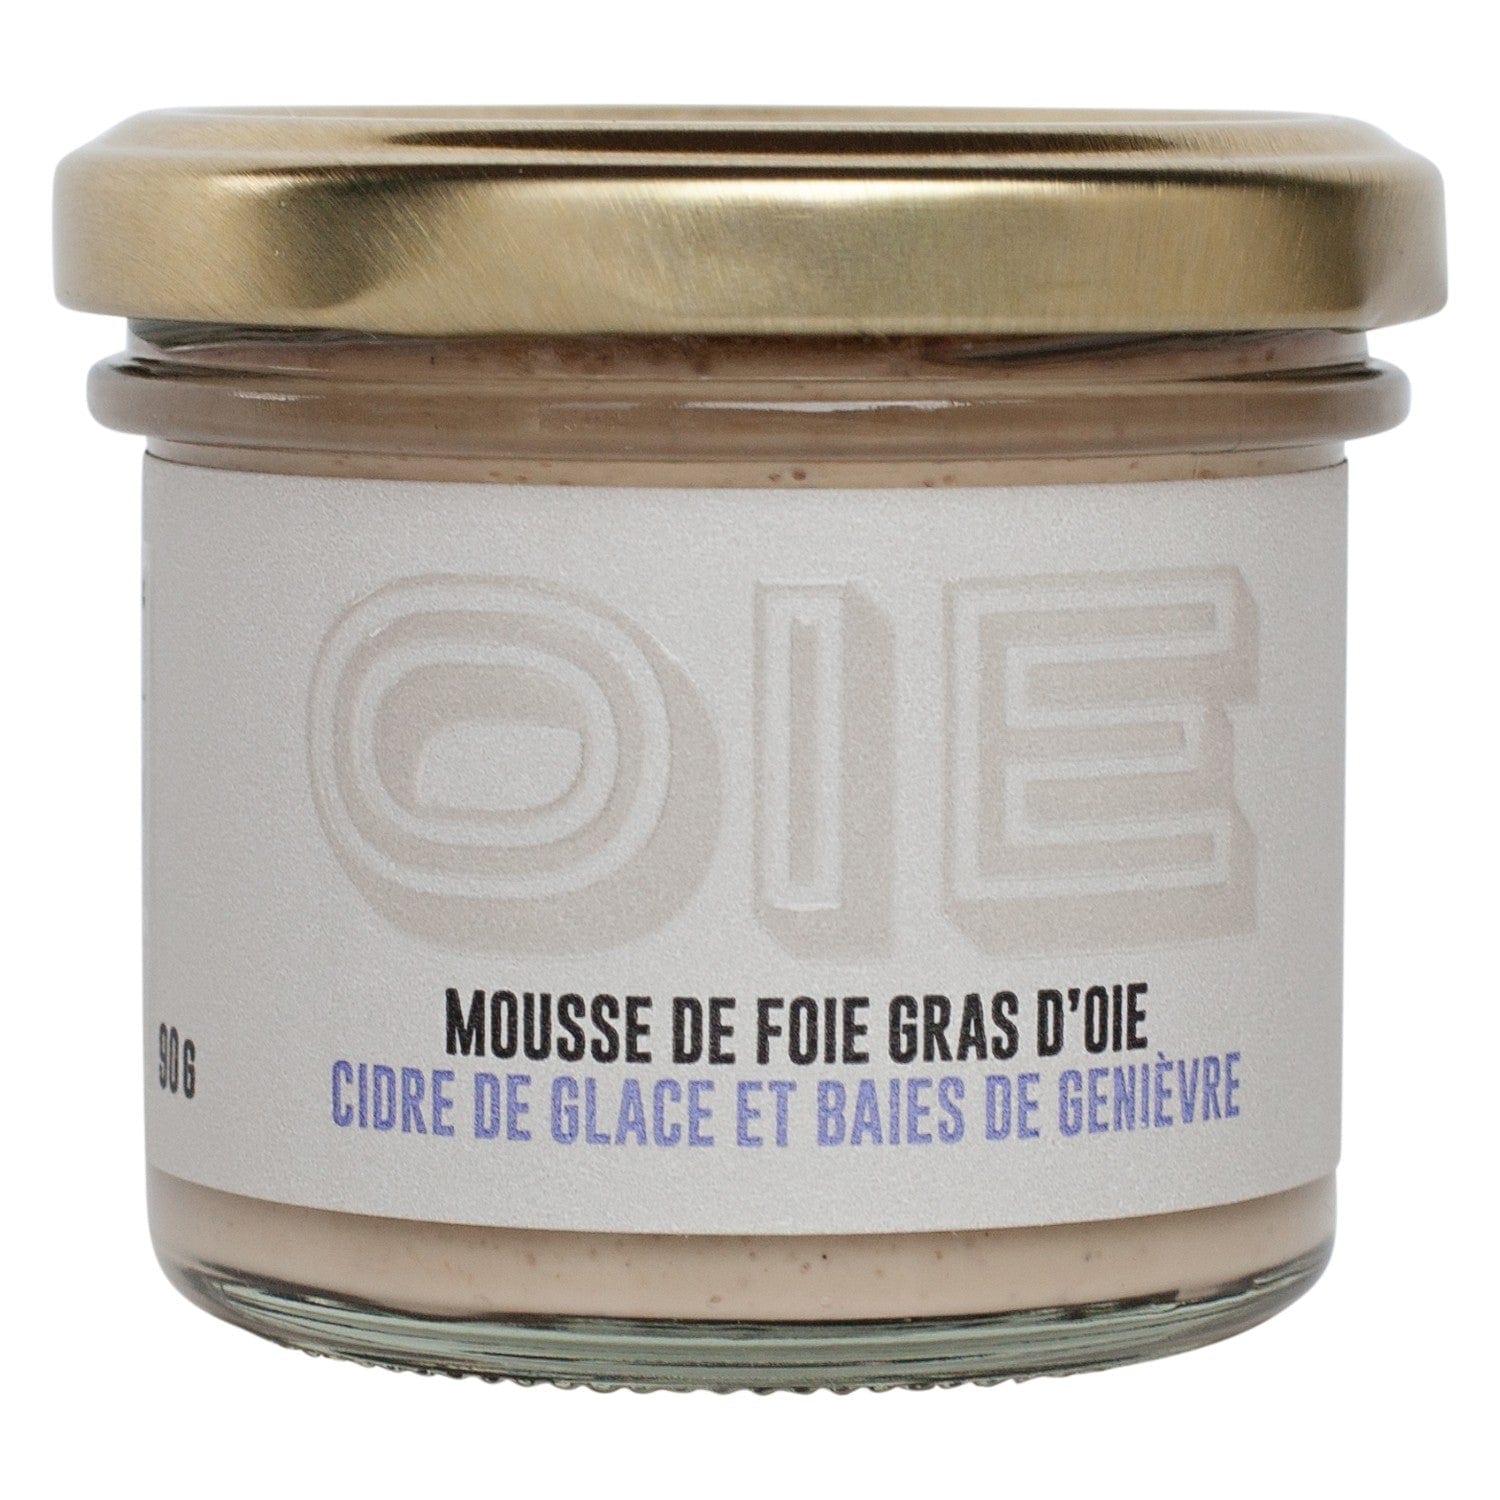 Mousse de foie gras d'oie - Cidre de glace et baies de genièvre